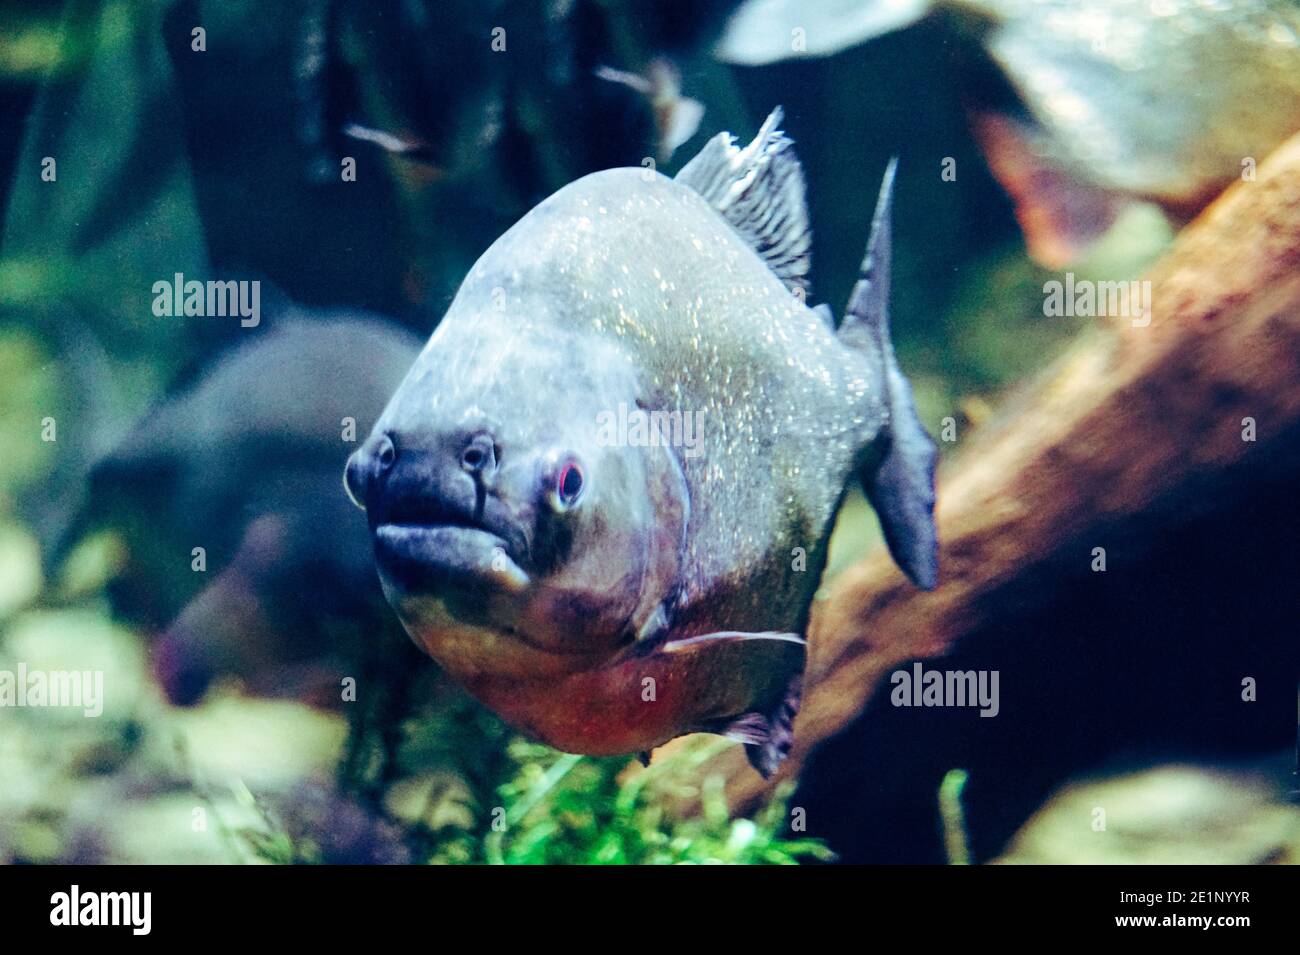 Piranha fish - front view Stock Photo - Alamy